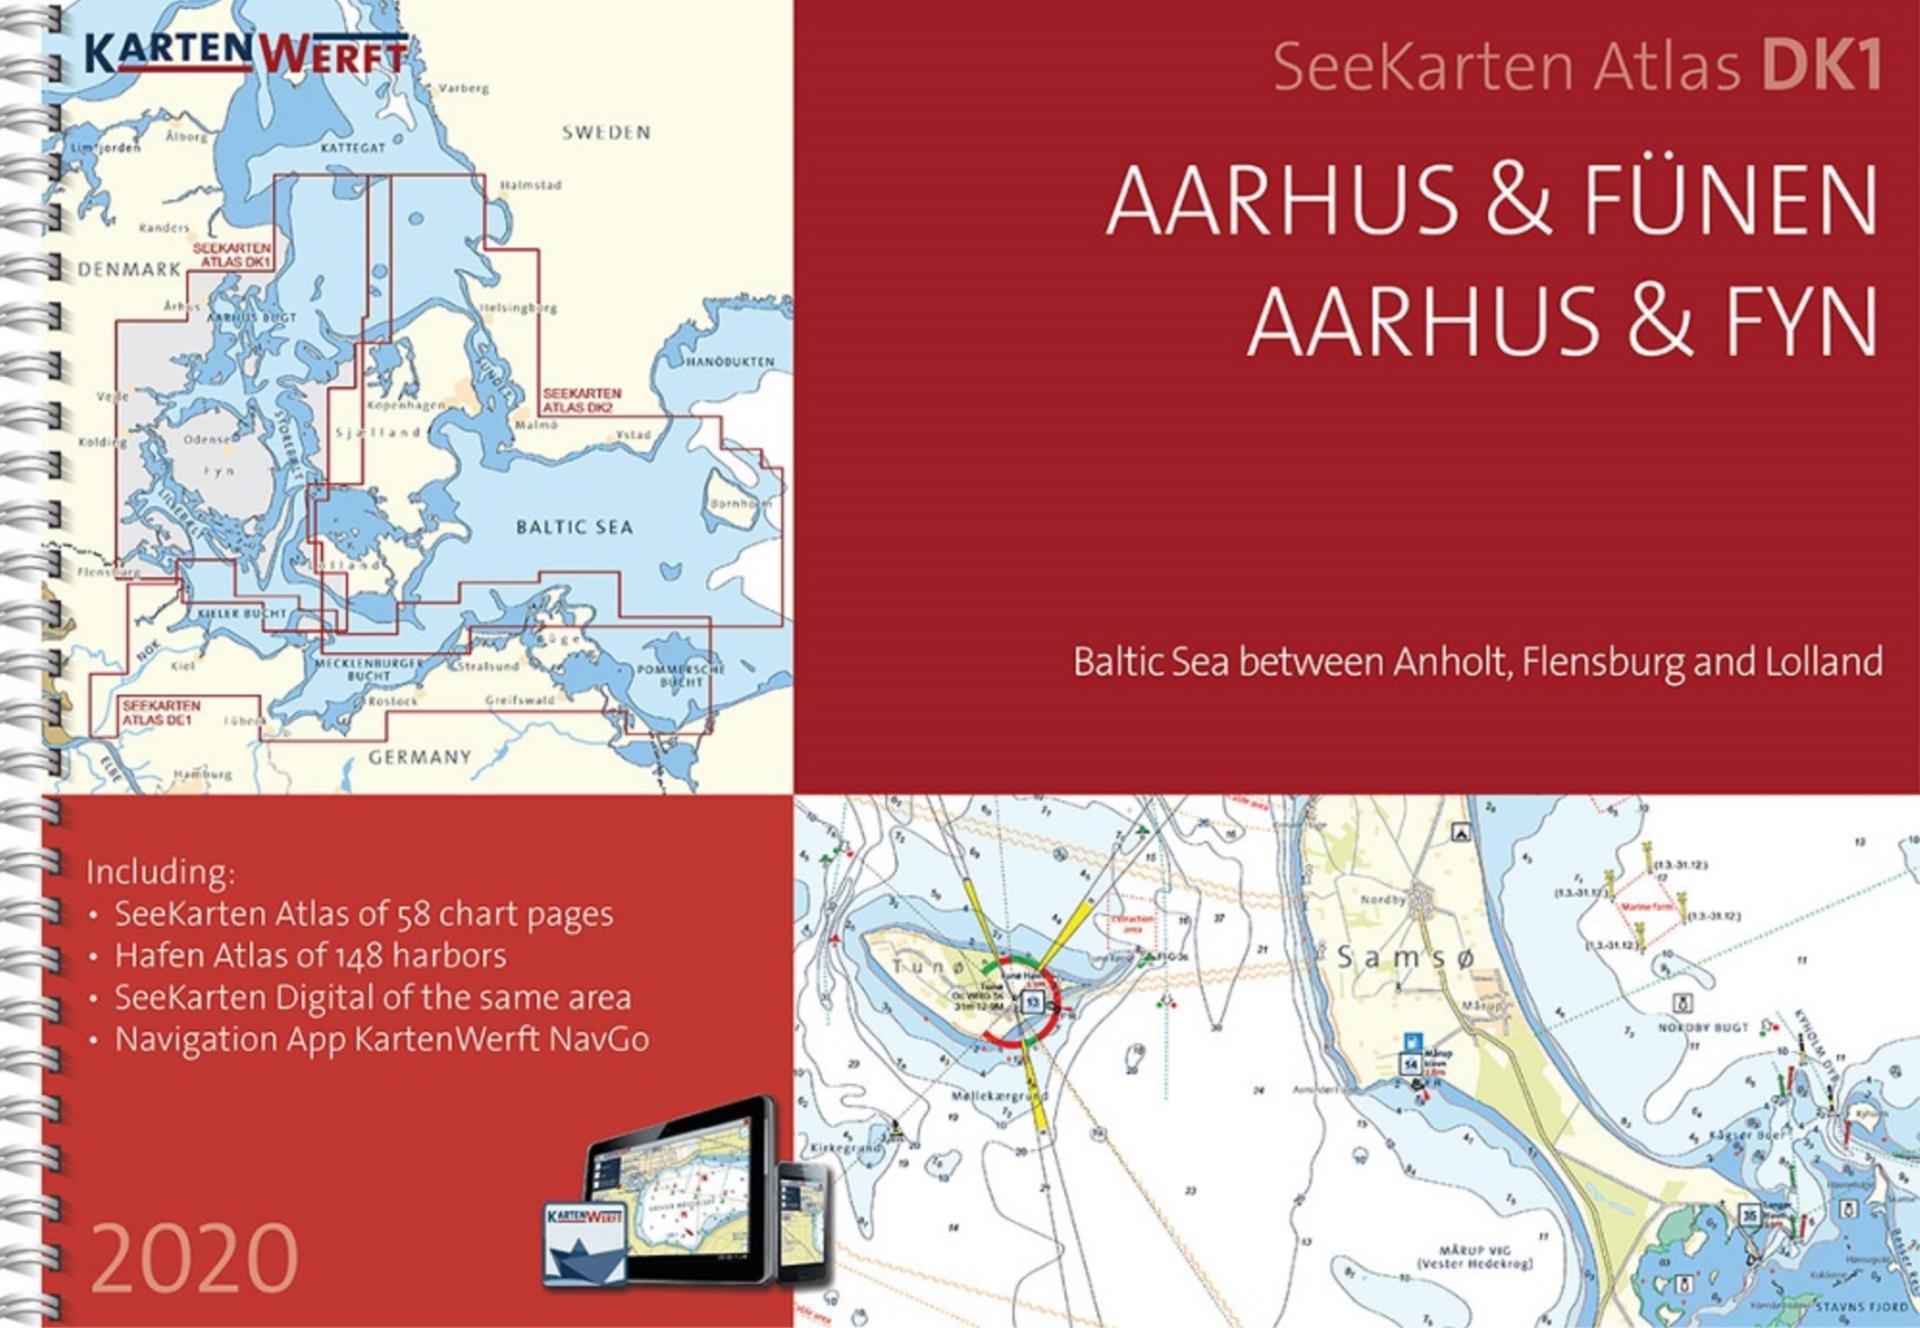 Kartenwerft Seekarten Atlas DK1, Aarhus & Fünen